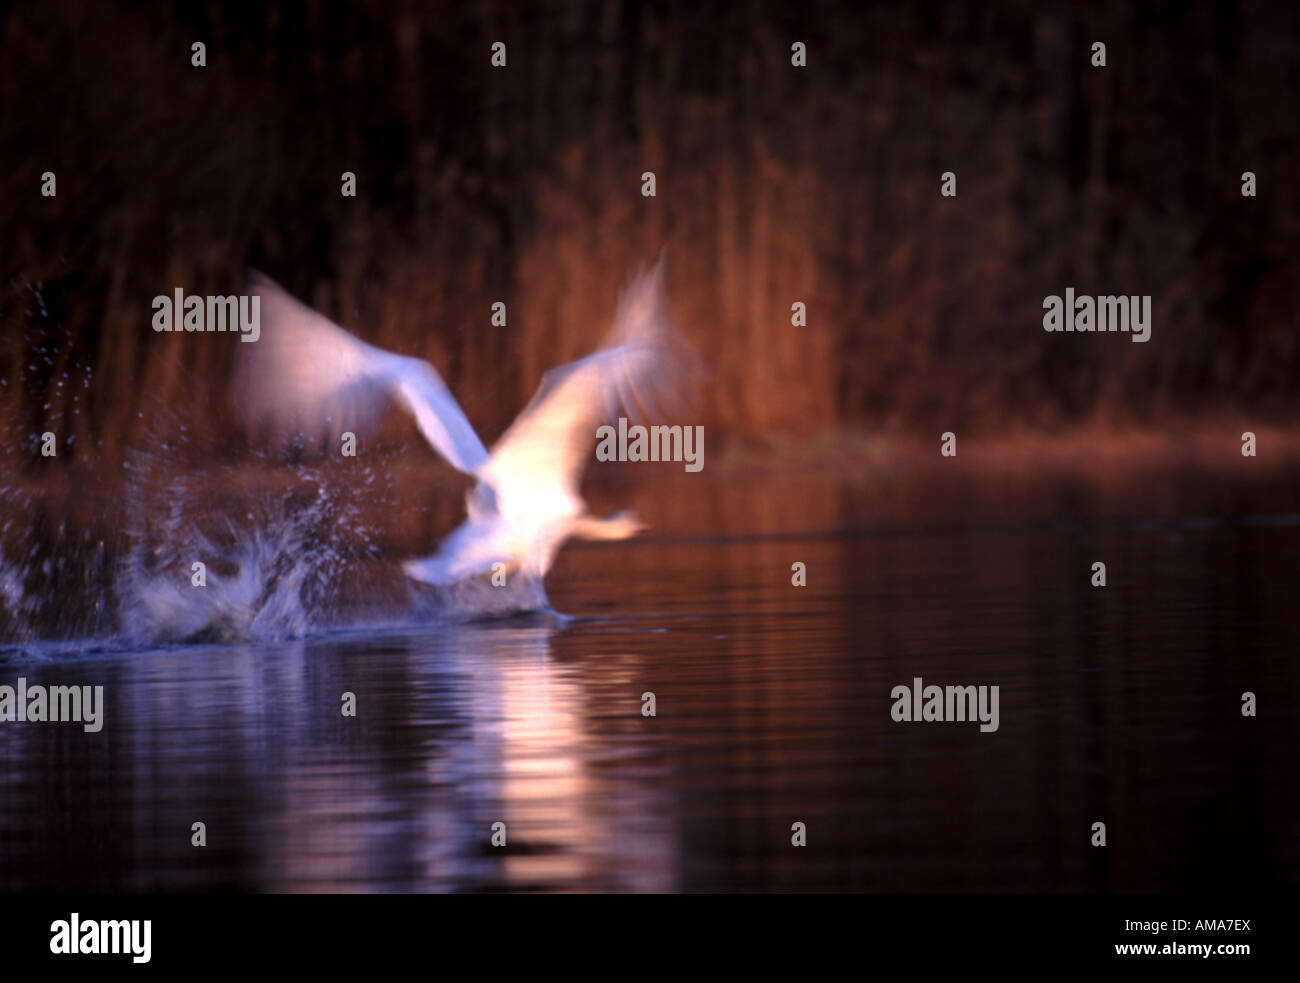 Cigno, Cygnus olor, volare in motion blur al di sopra della superficie dell'acqua nel lago Vansjø, Østfold, Norvegia. Foto Stock